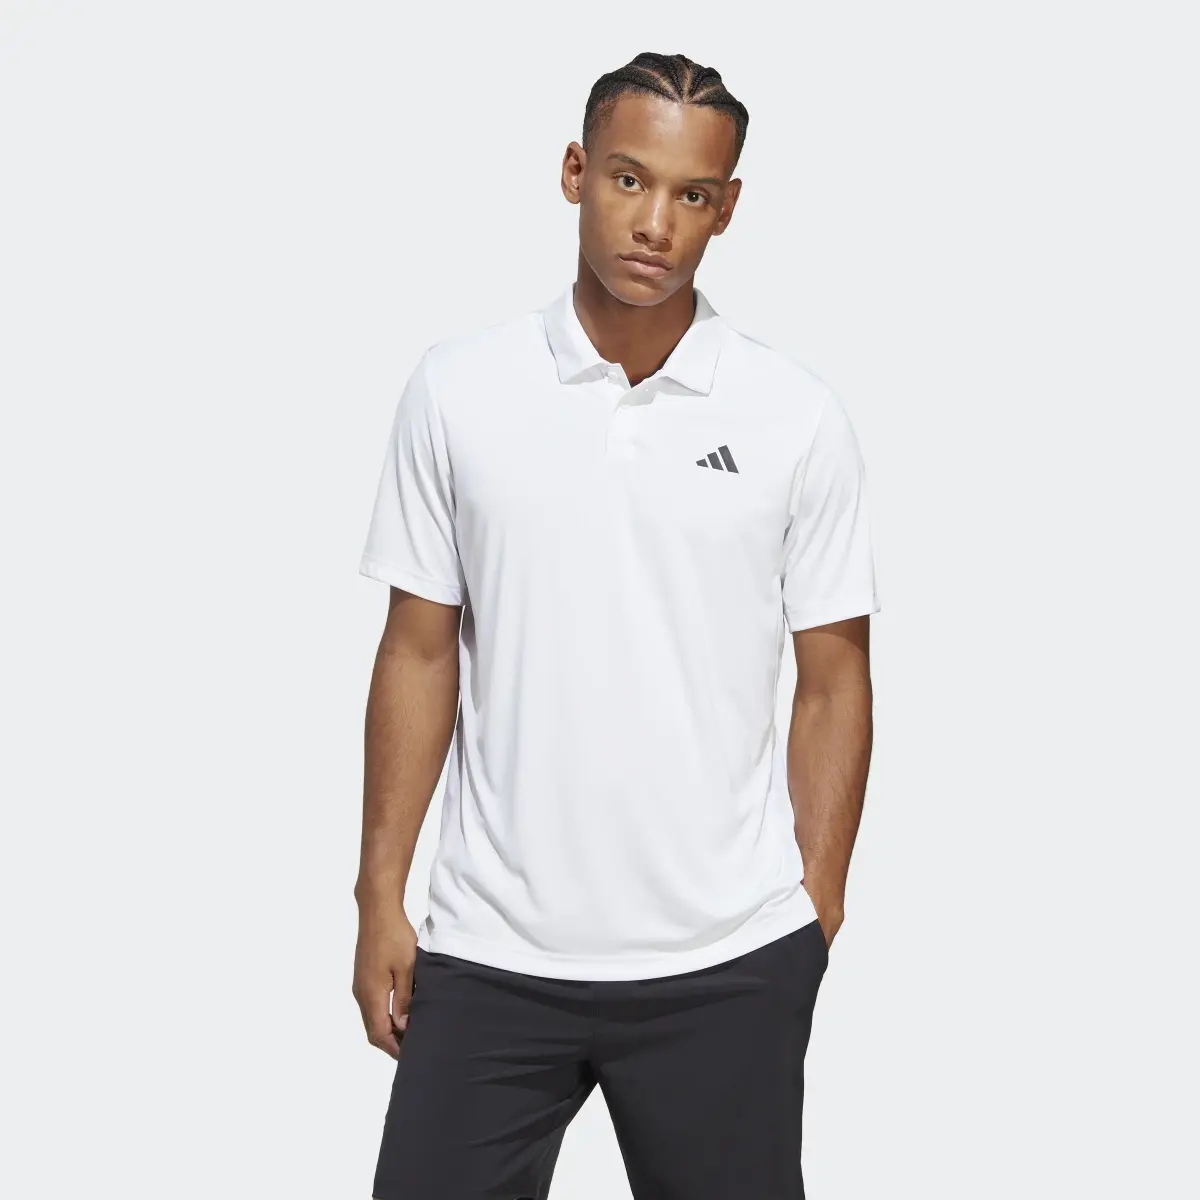 Adidas Club Tennis Polo Shirt. 2